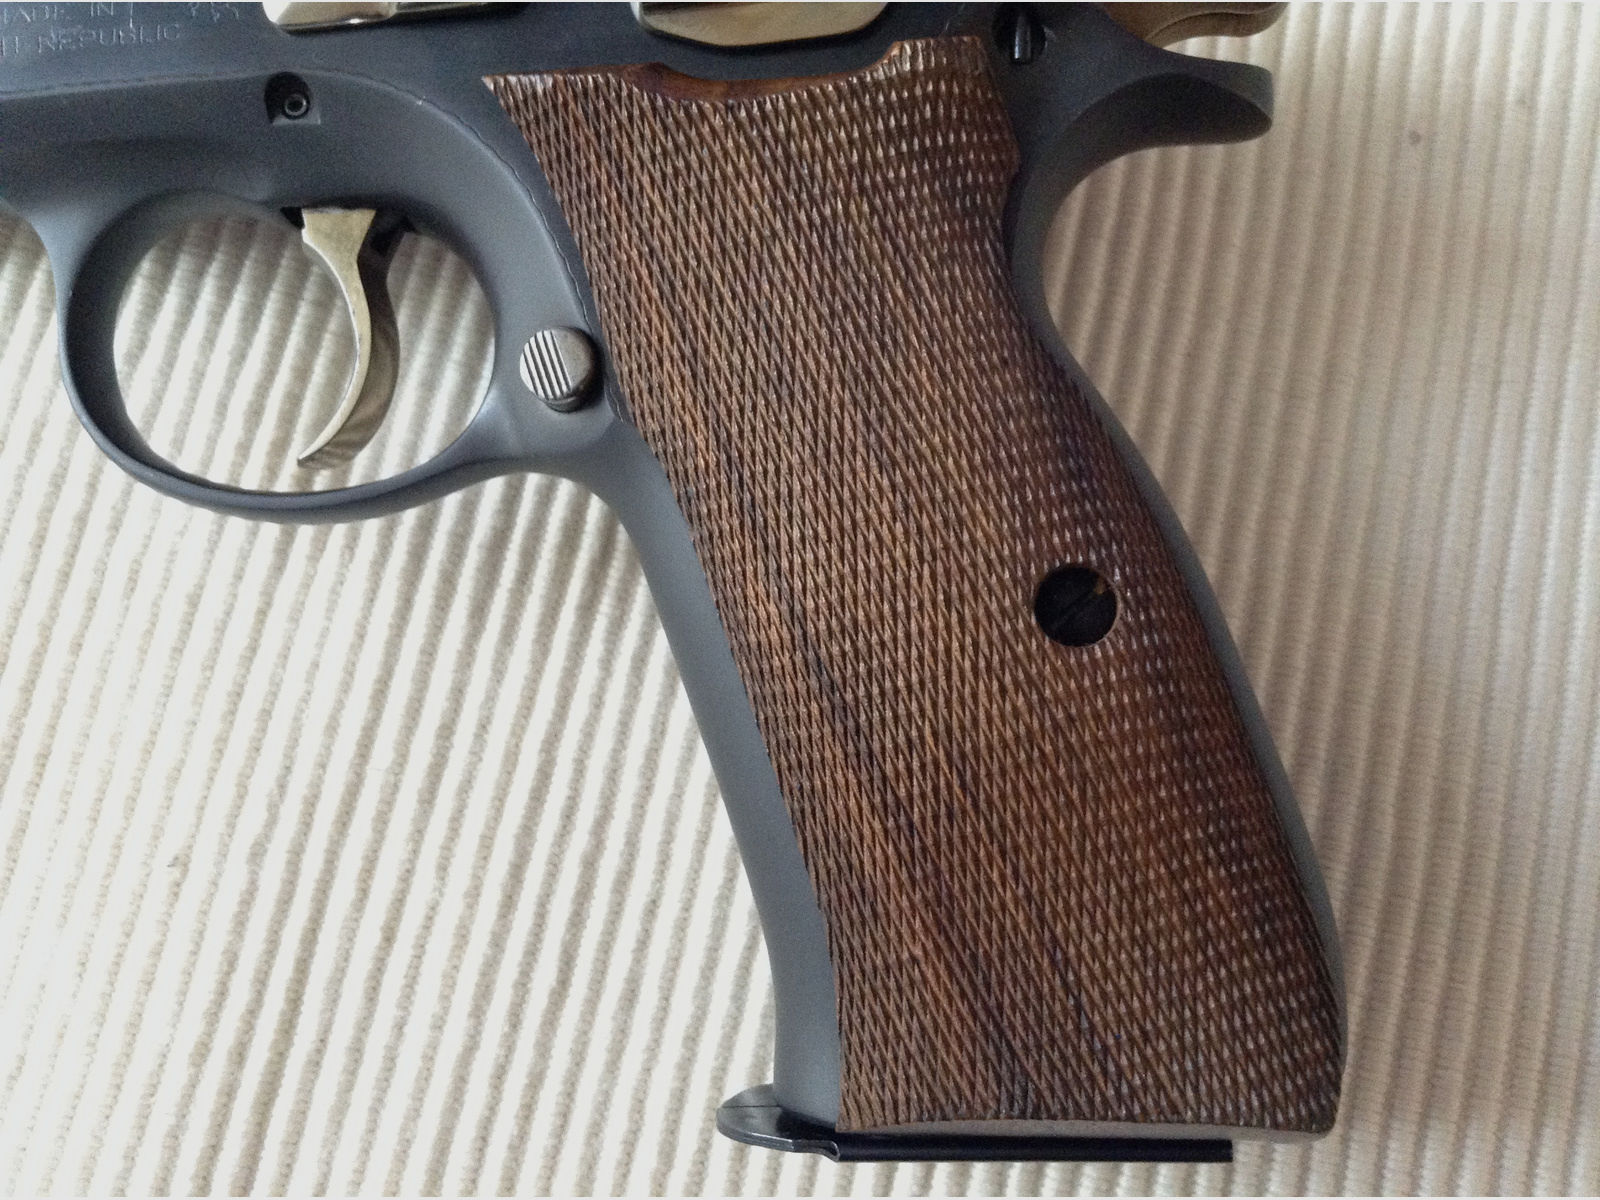 Ha. Pistole Brünner CZ-75 Luxus, Kal. 9mmLuger, aus Sammlung